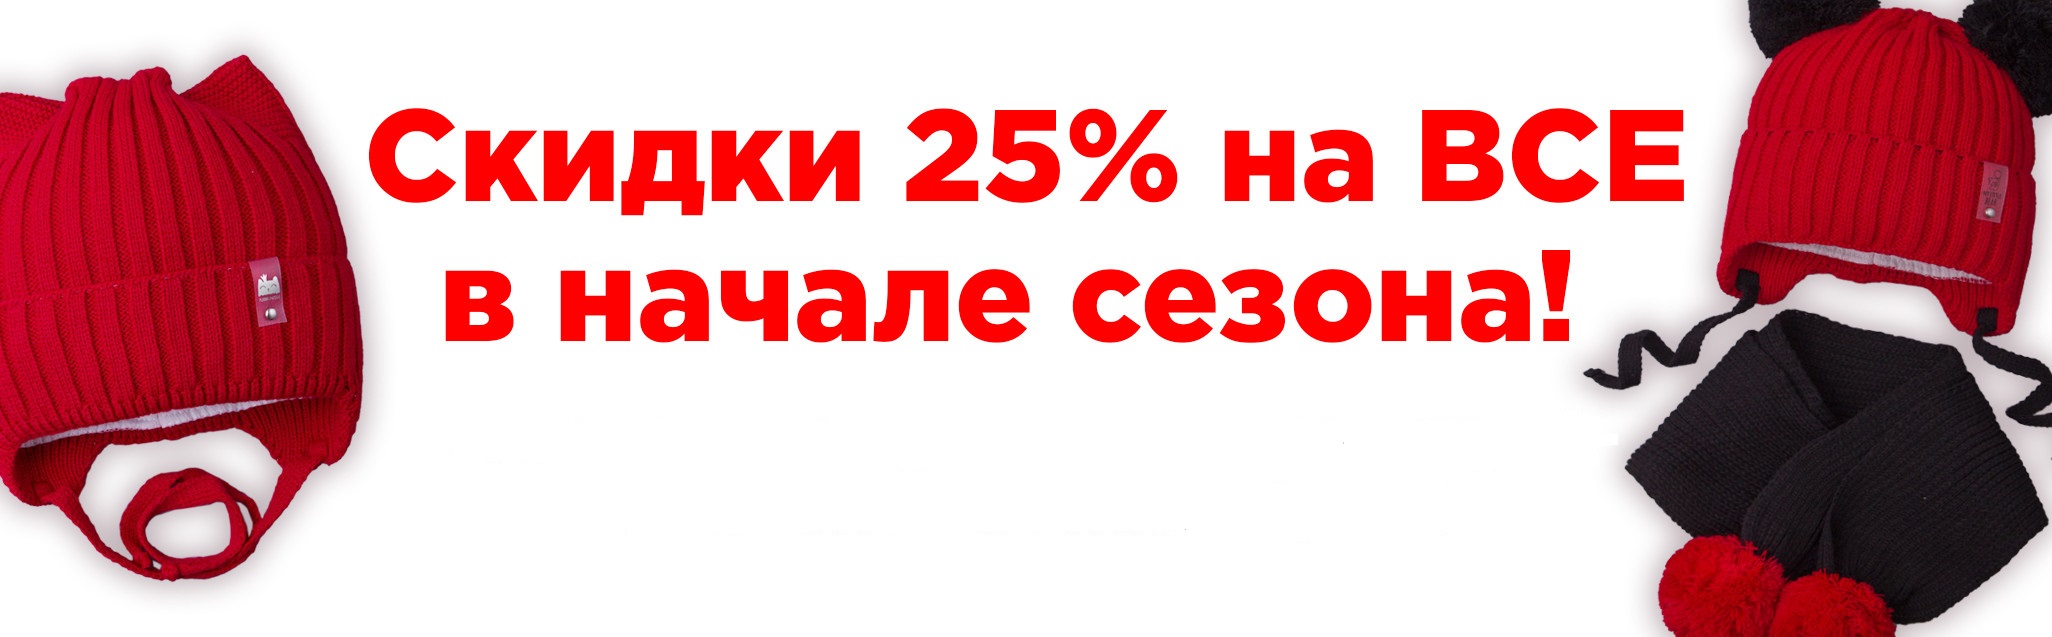  . - 25%   . .   -             .